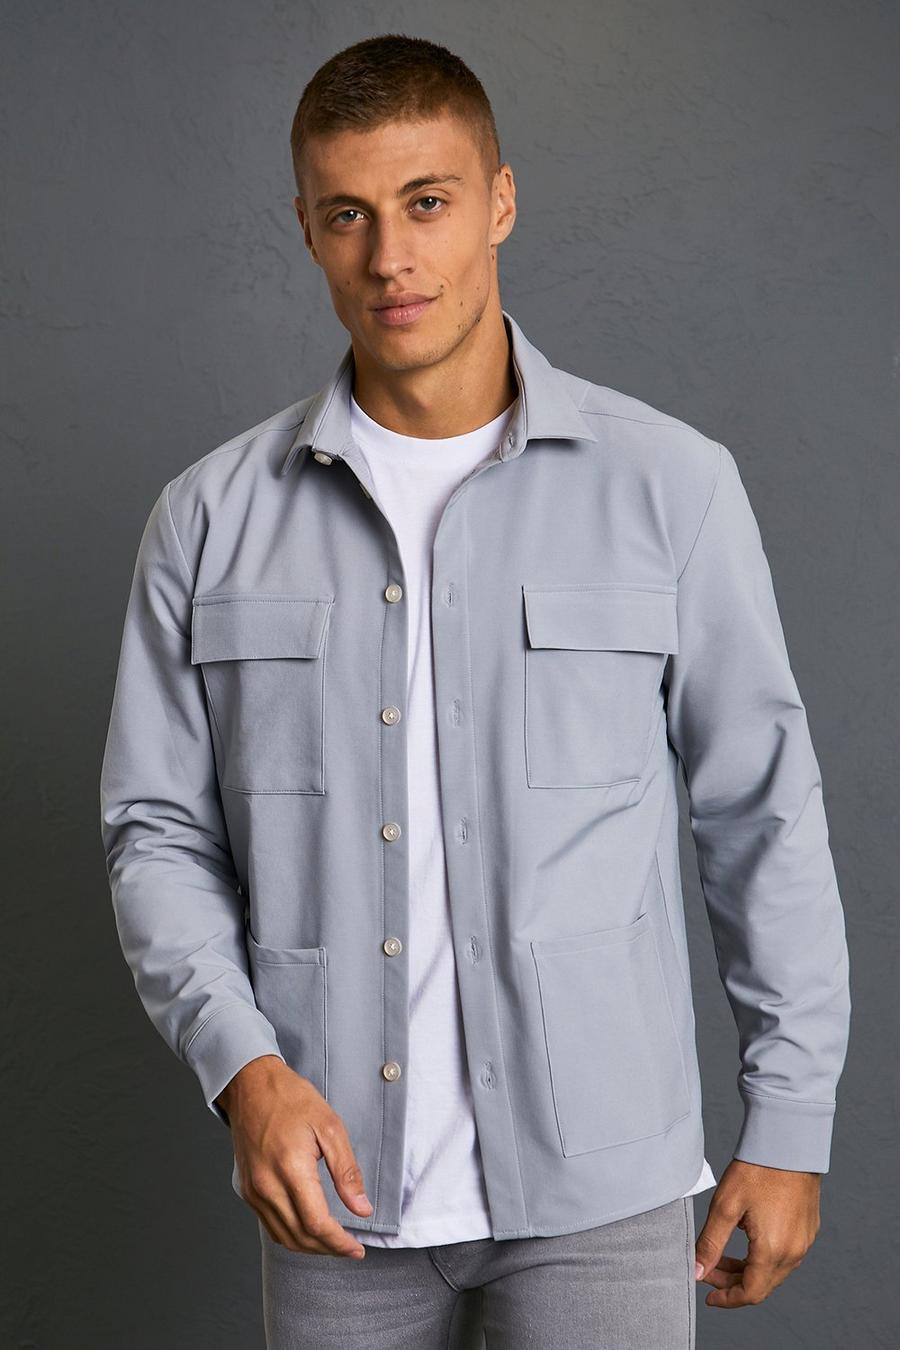 Light grey grå Överskjorta i fyrvägsstretch med fickor